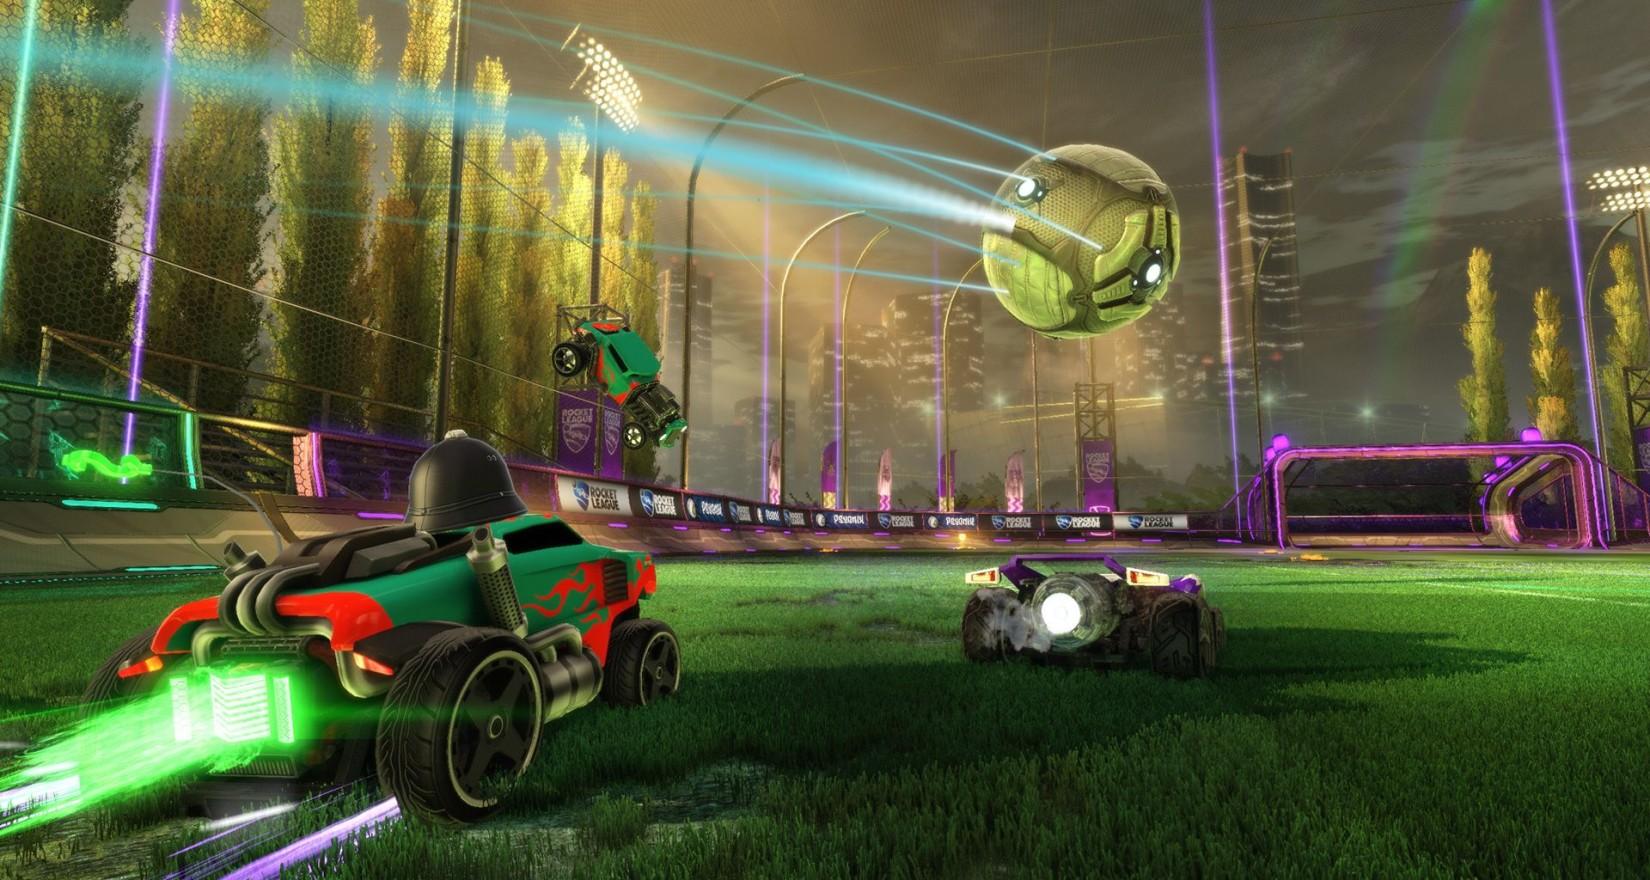 Microsoft anuncia cross-play com outras plataformas, começando com Rocket League